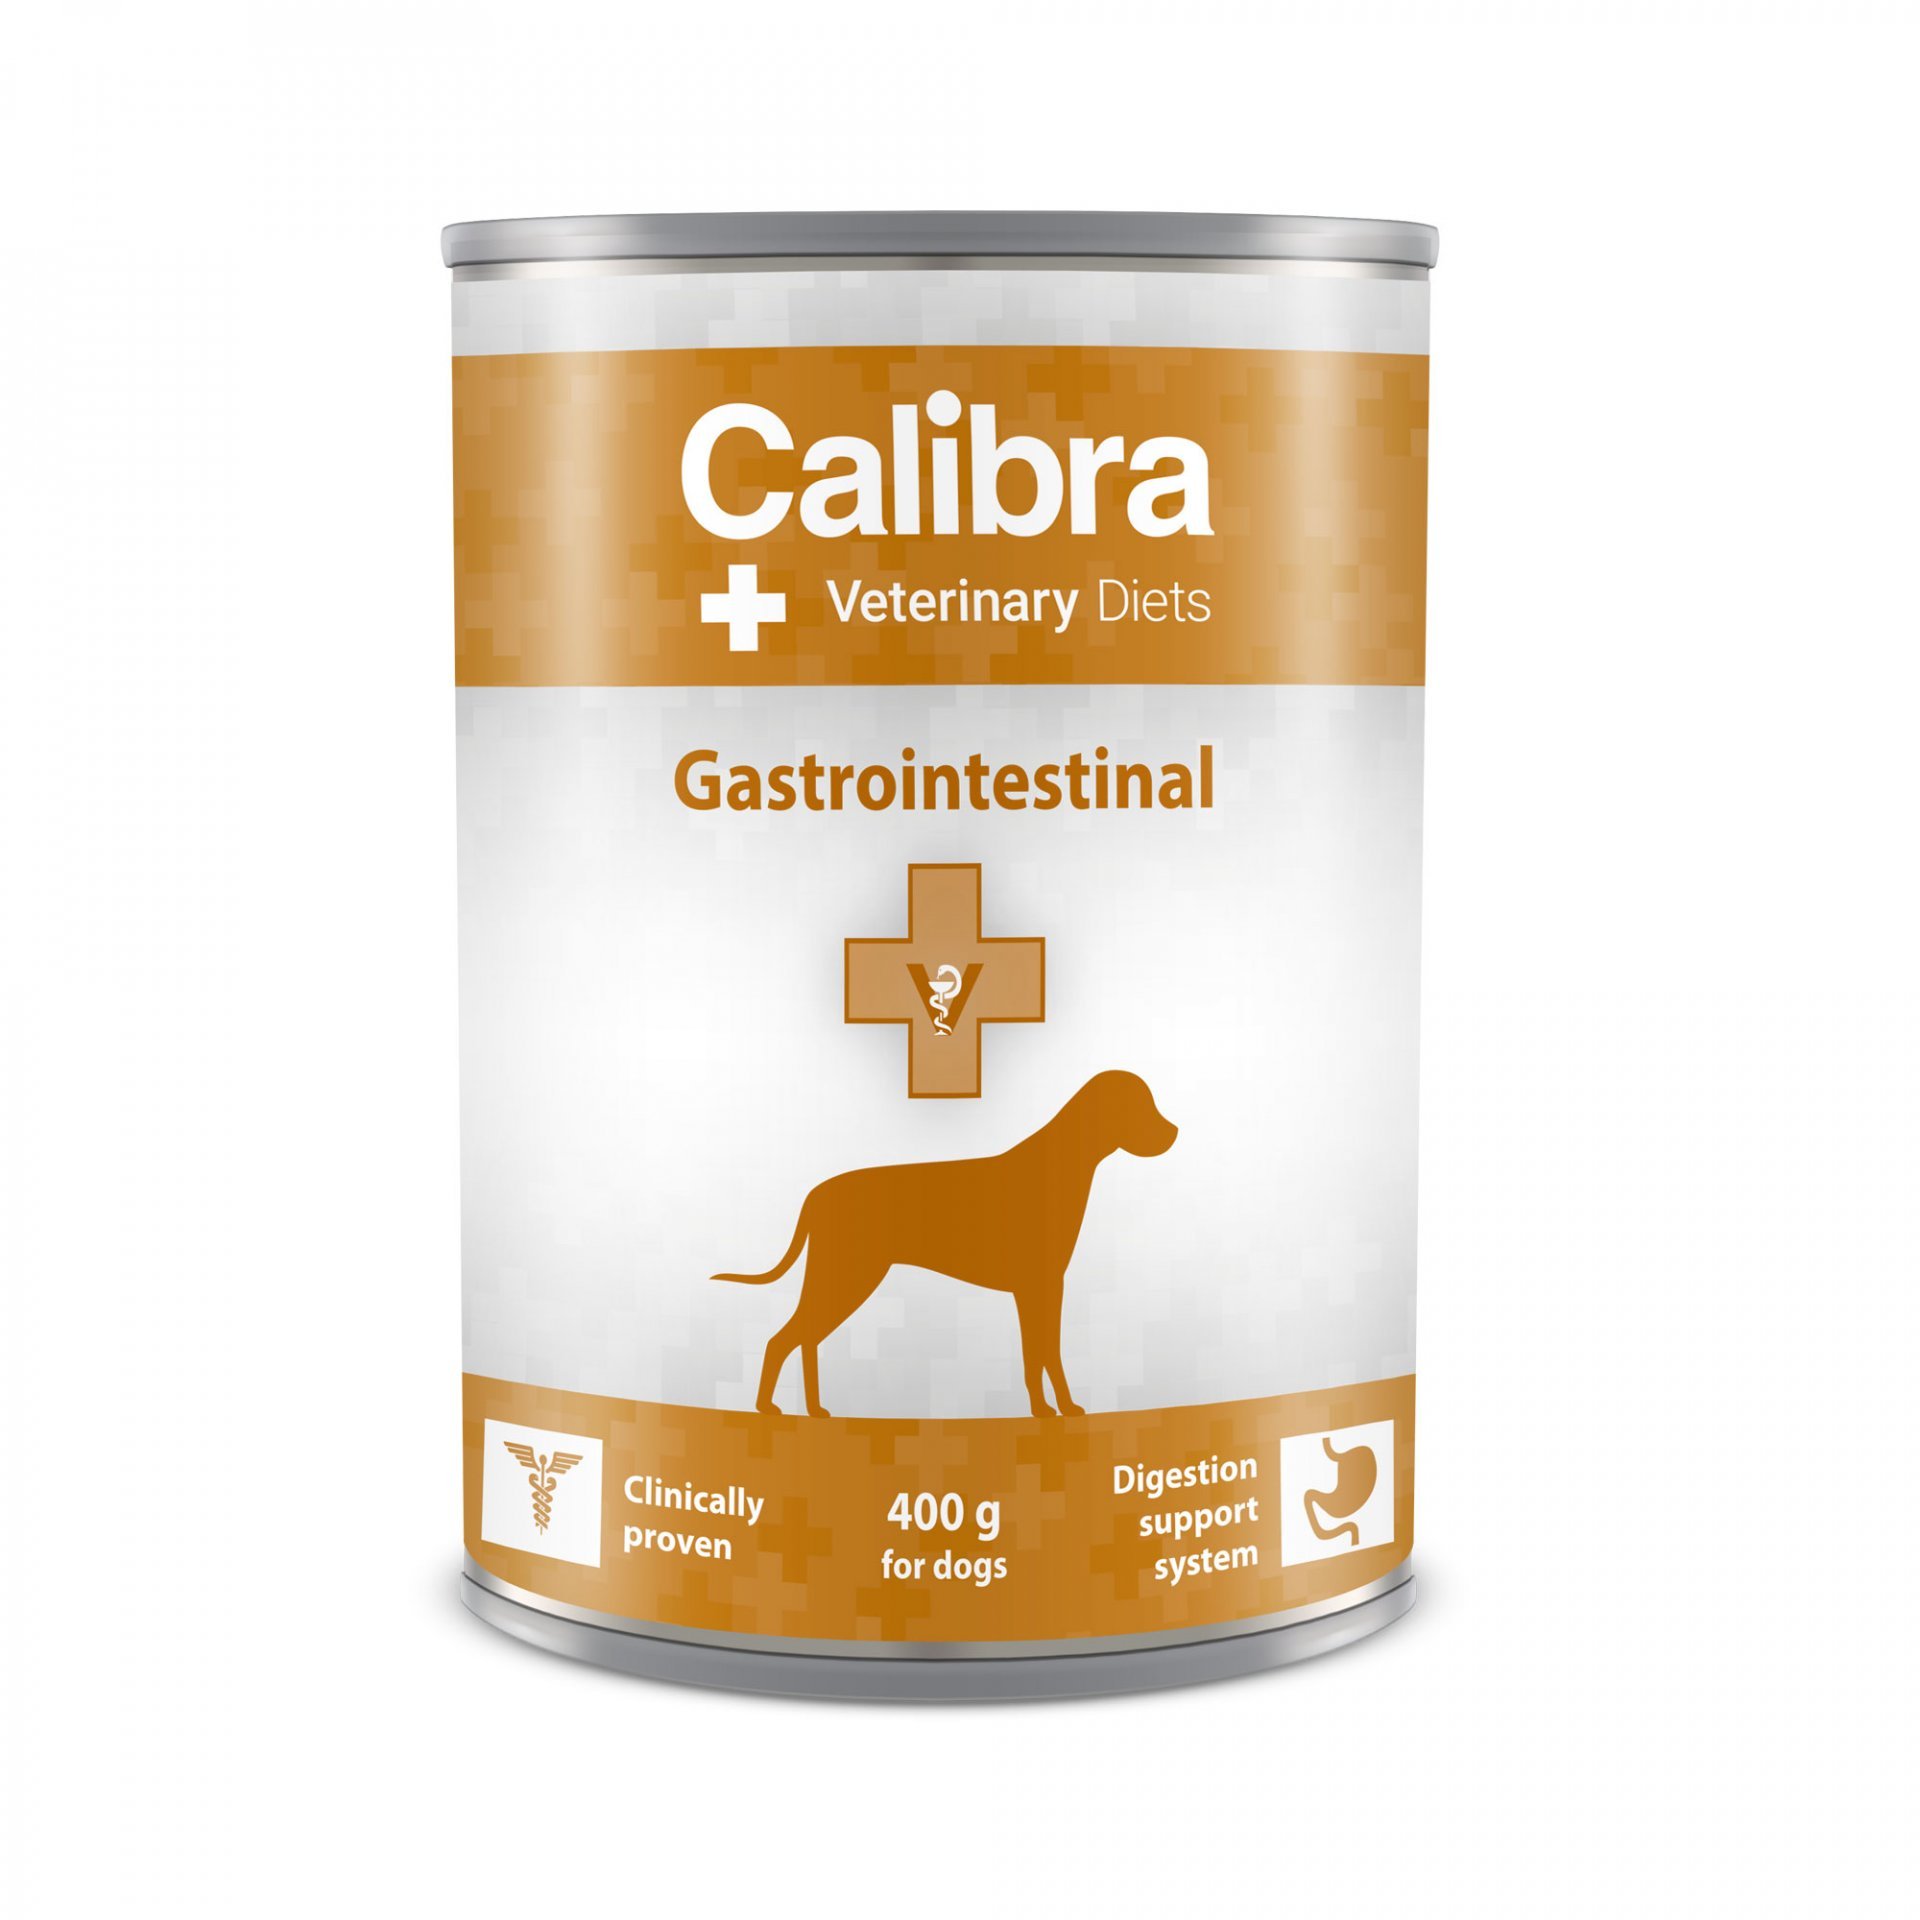 Роял гастро для собак мелких пород. Gastrointestinal для собак. Hills Gastrointestinal для собак влажный корм. En Gastrointestinal для собак. Гастроинтестинал купить для собак.